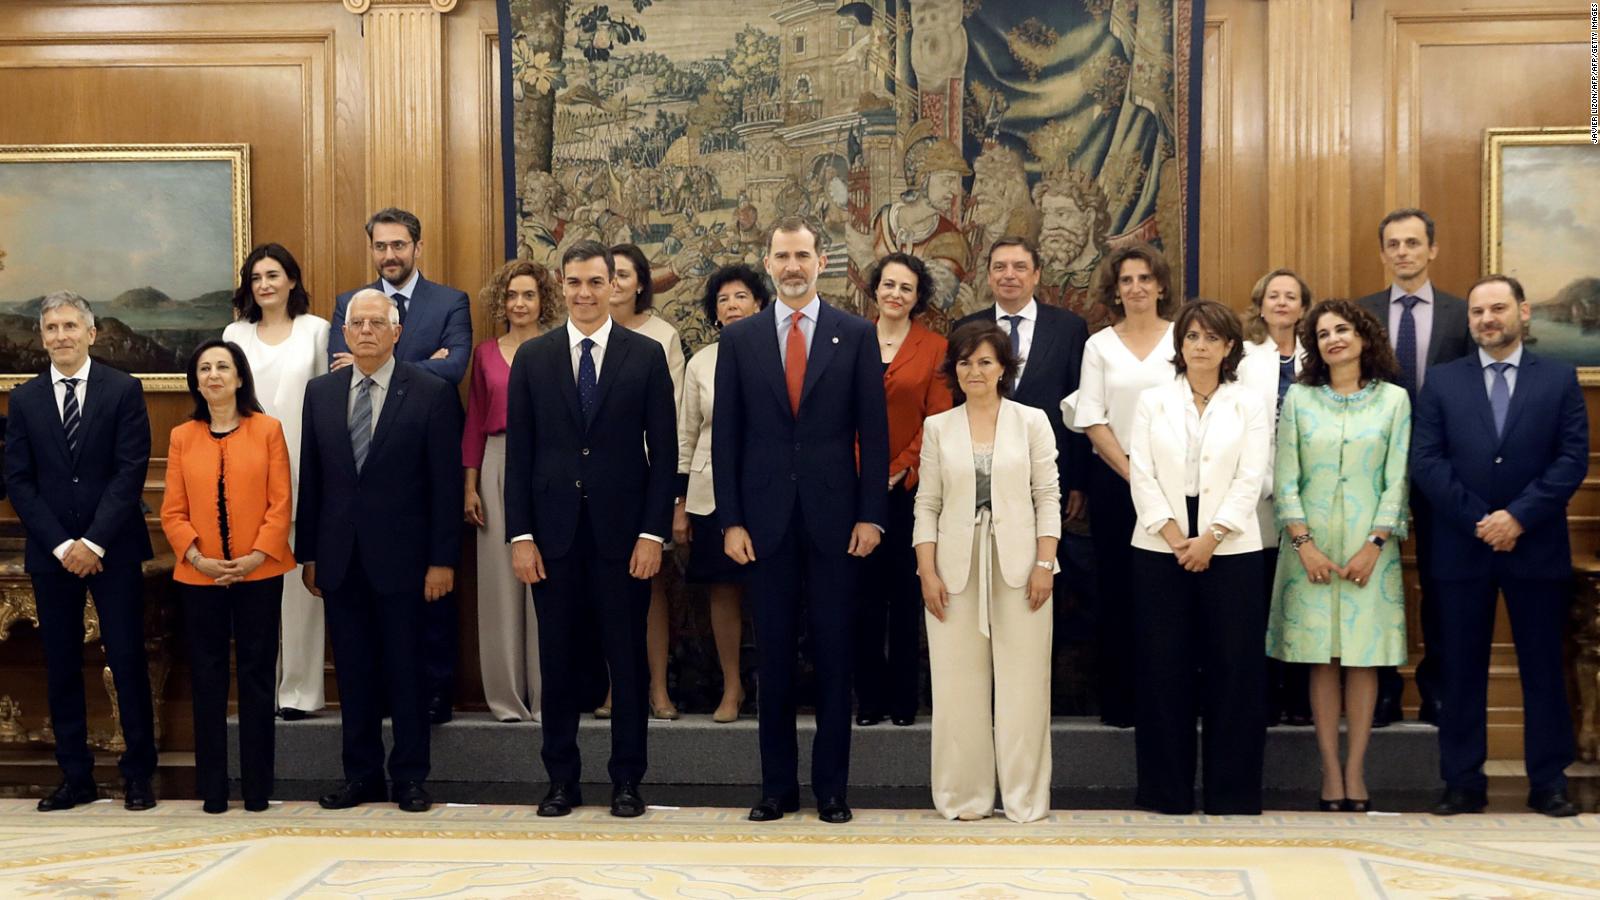 Por primera vez un gabinete en España tiene mujeres hombres | Video CNN